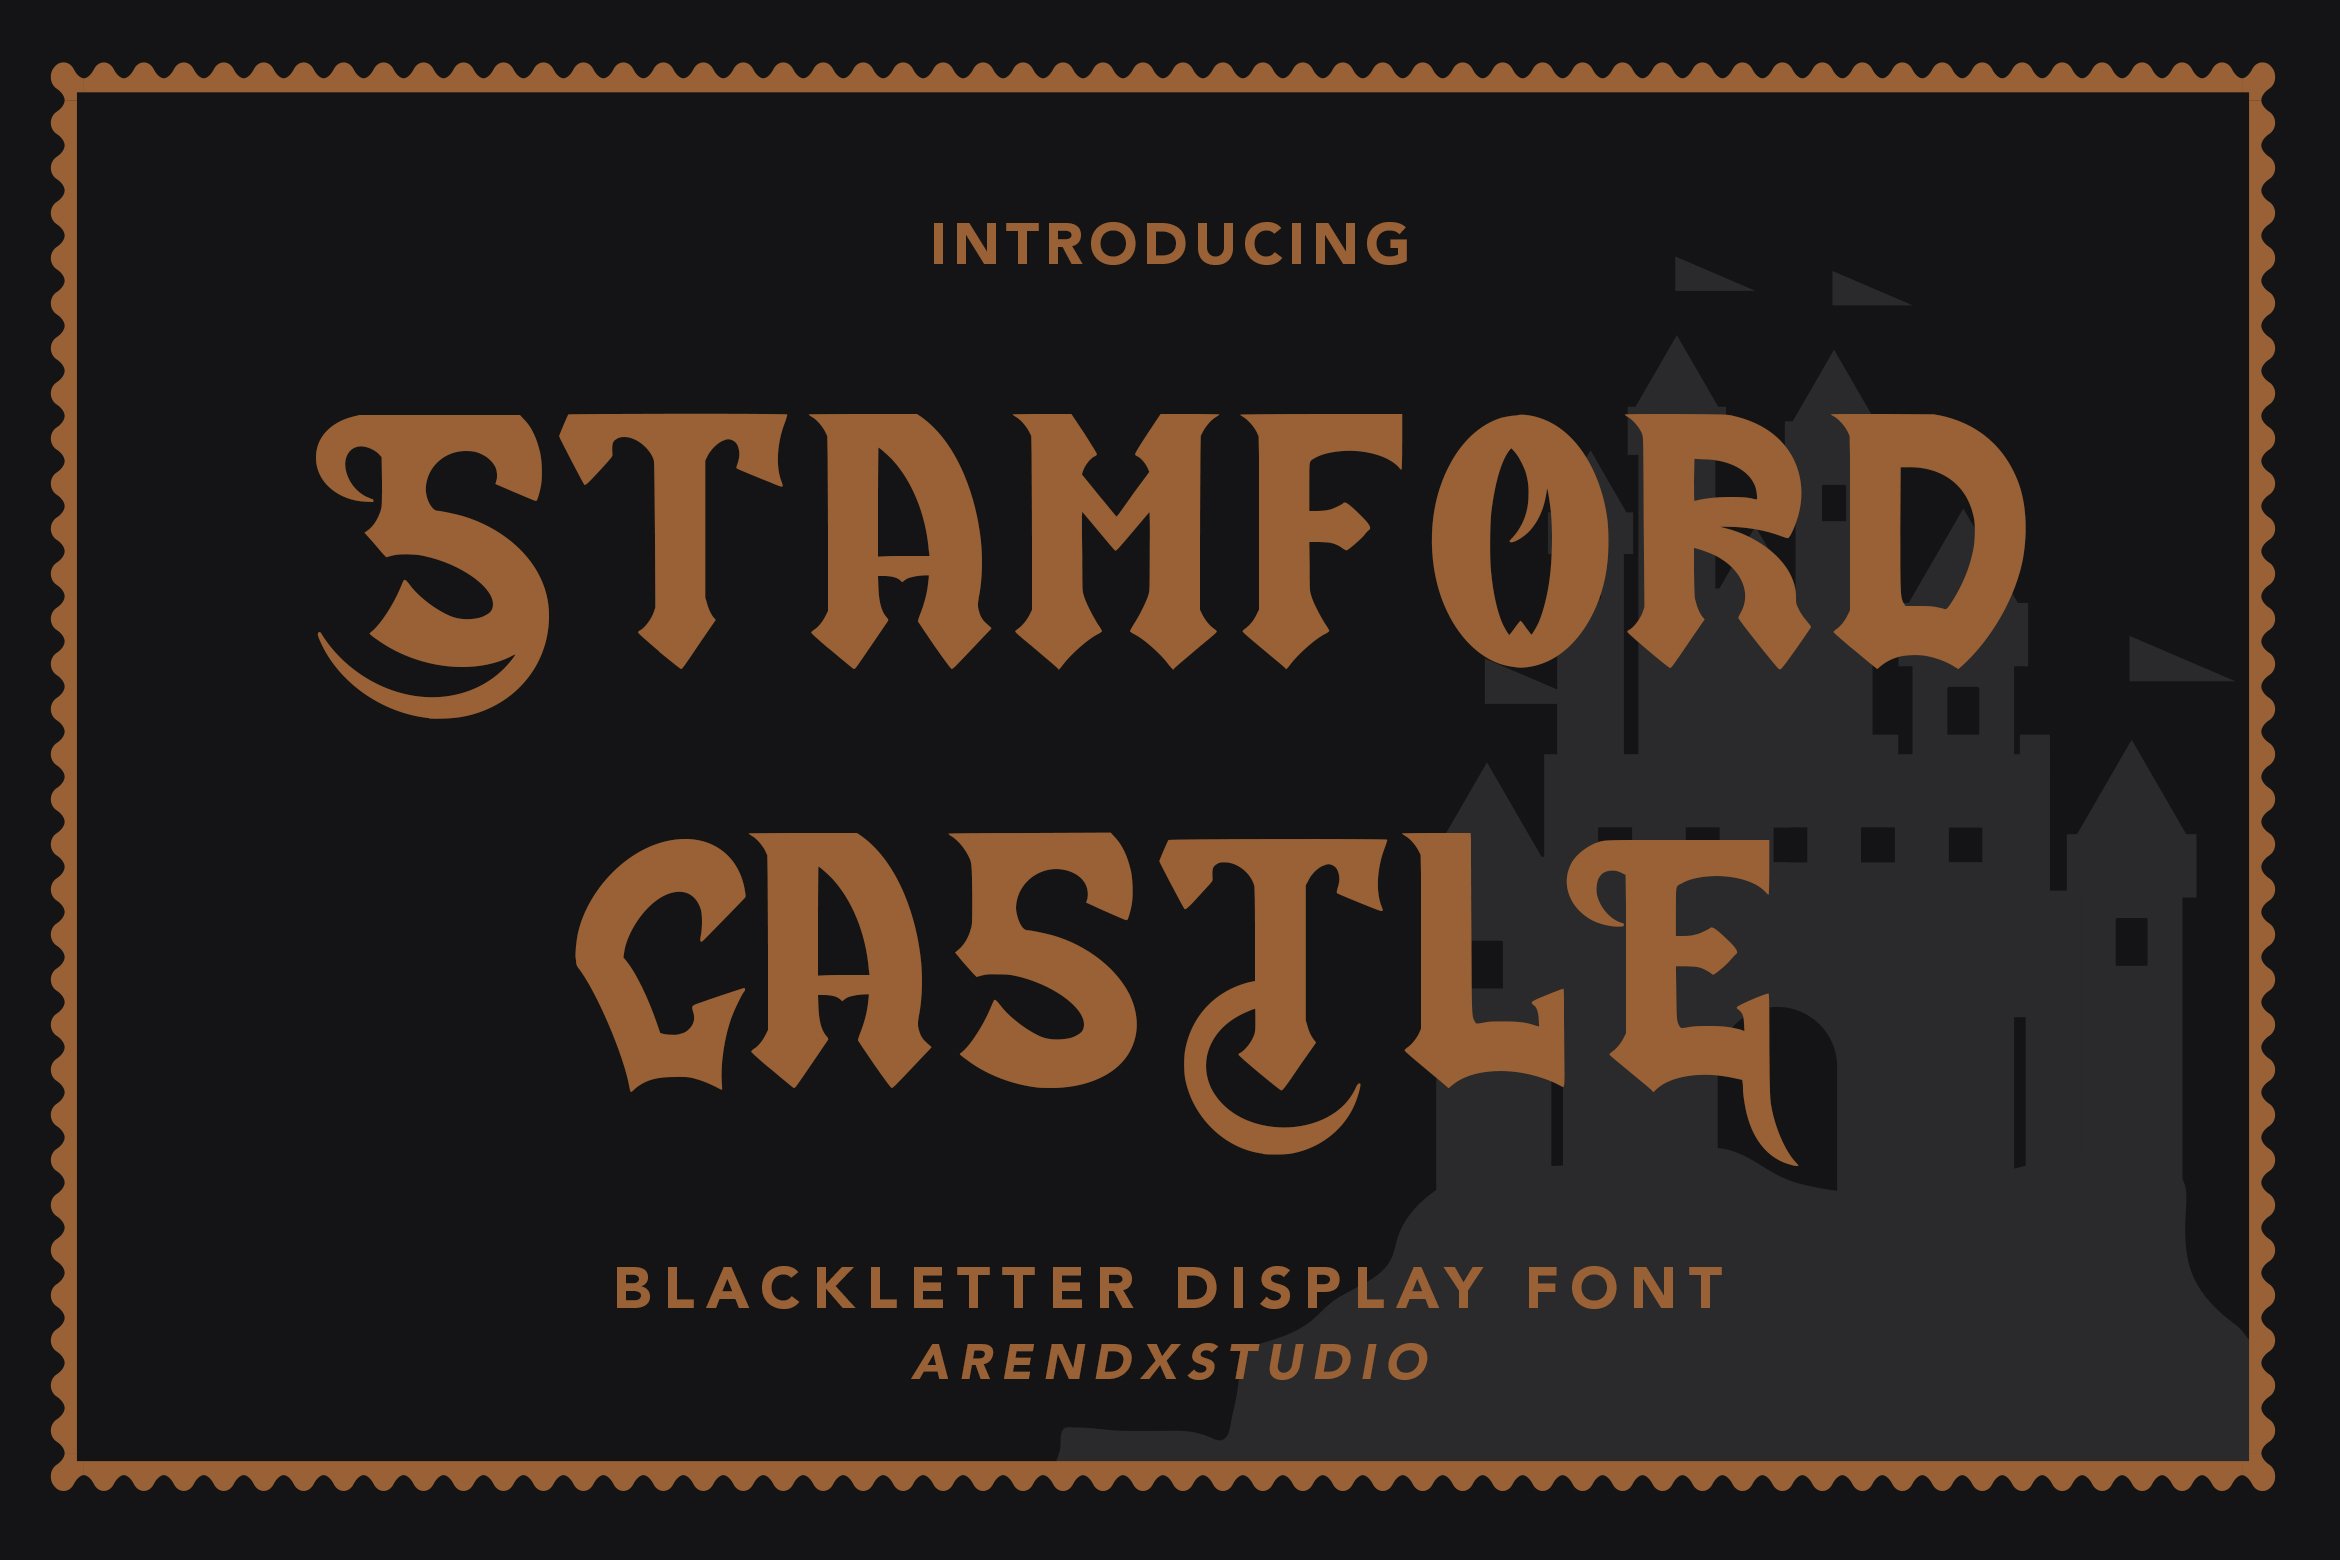 Stamford Castle - Blackletter Font cover image.